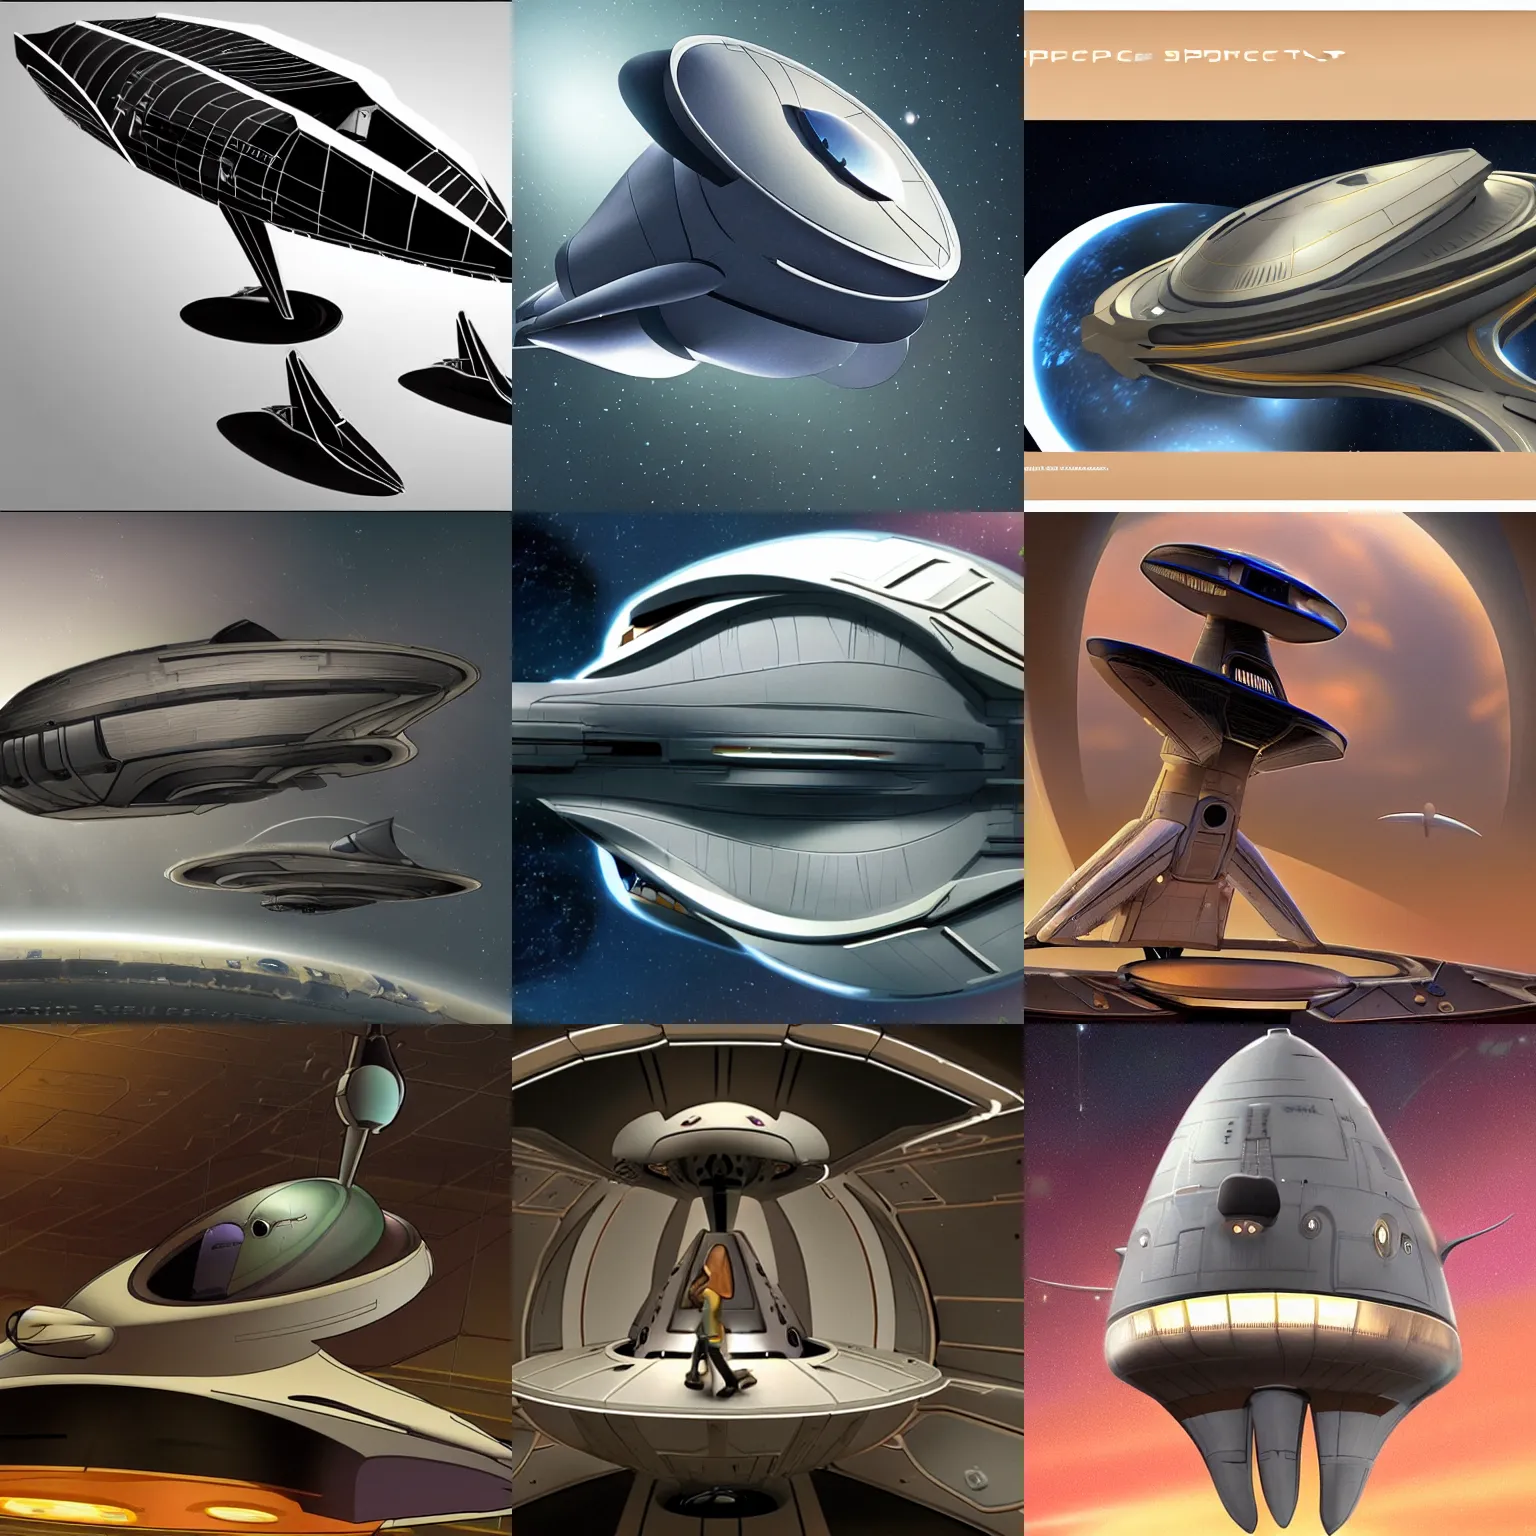 Prompt: spaceship designed by Brad Bird